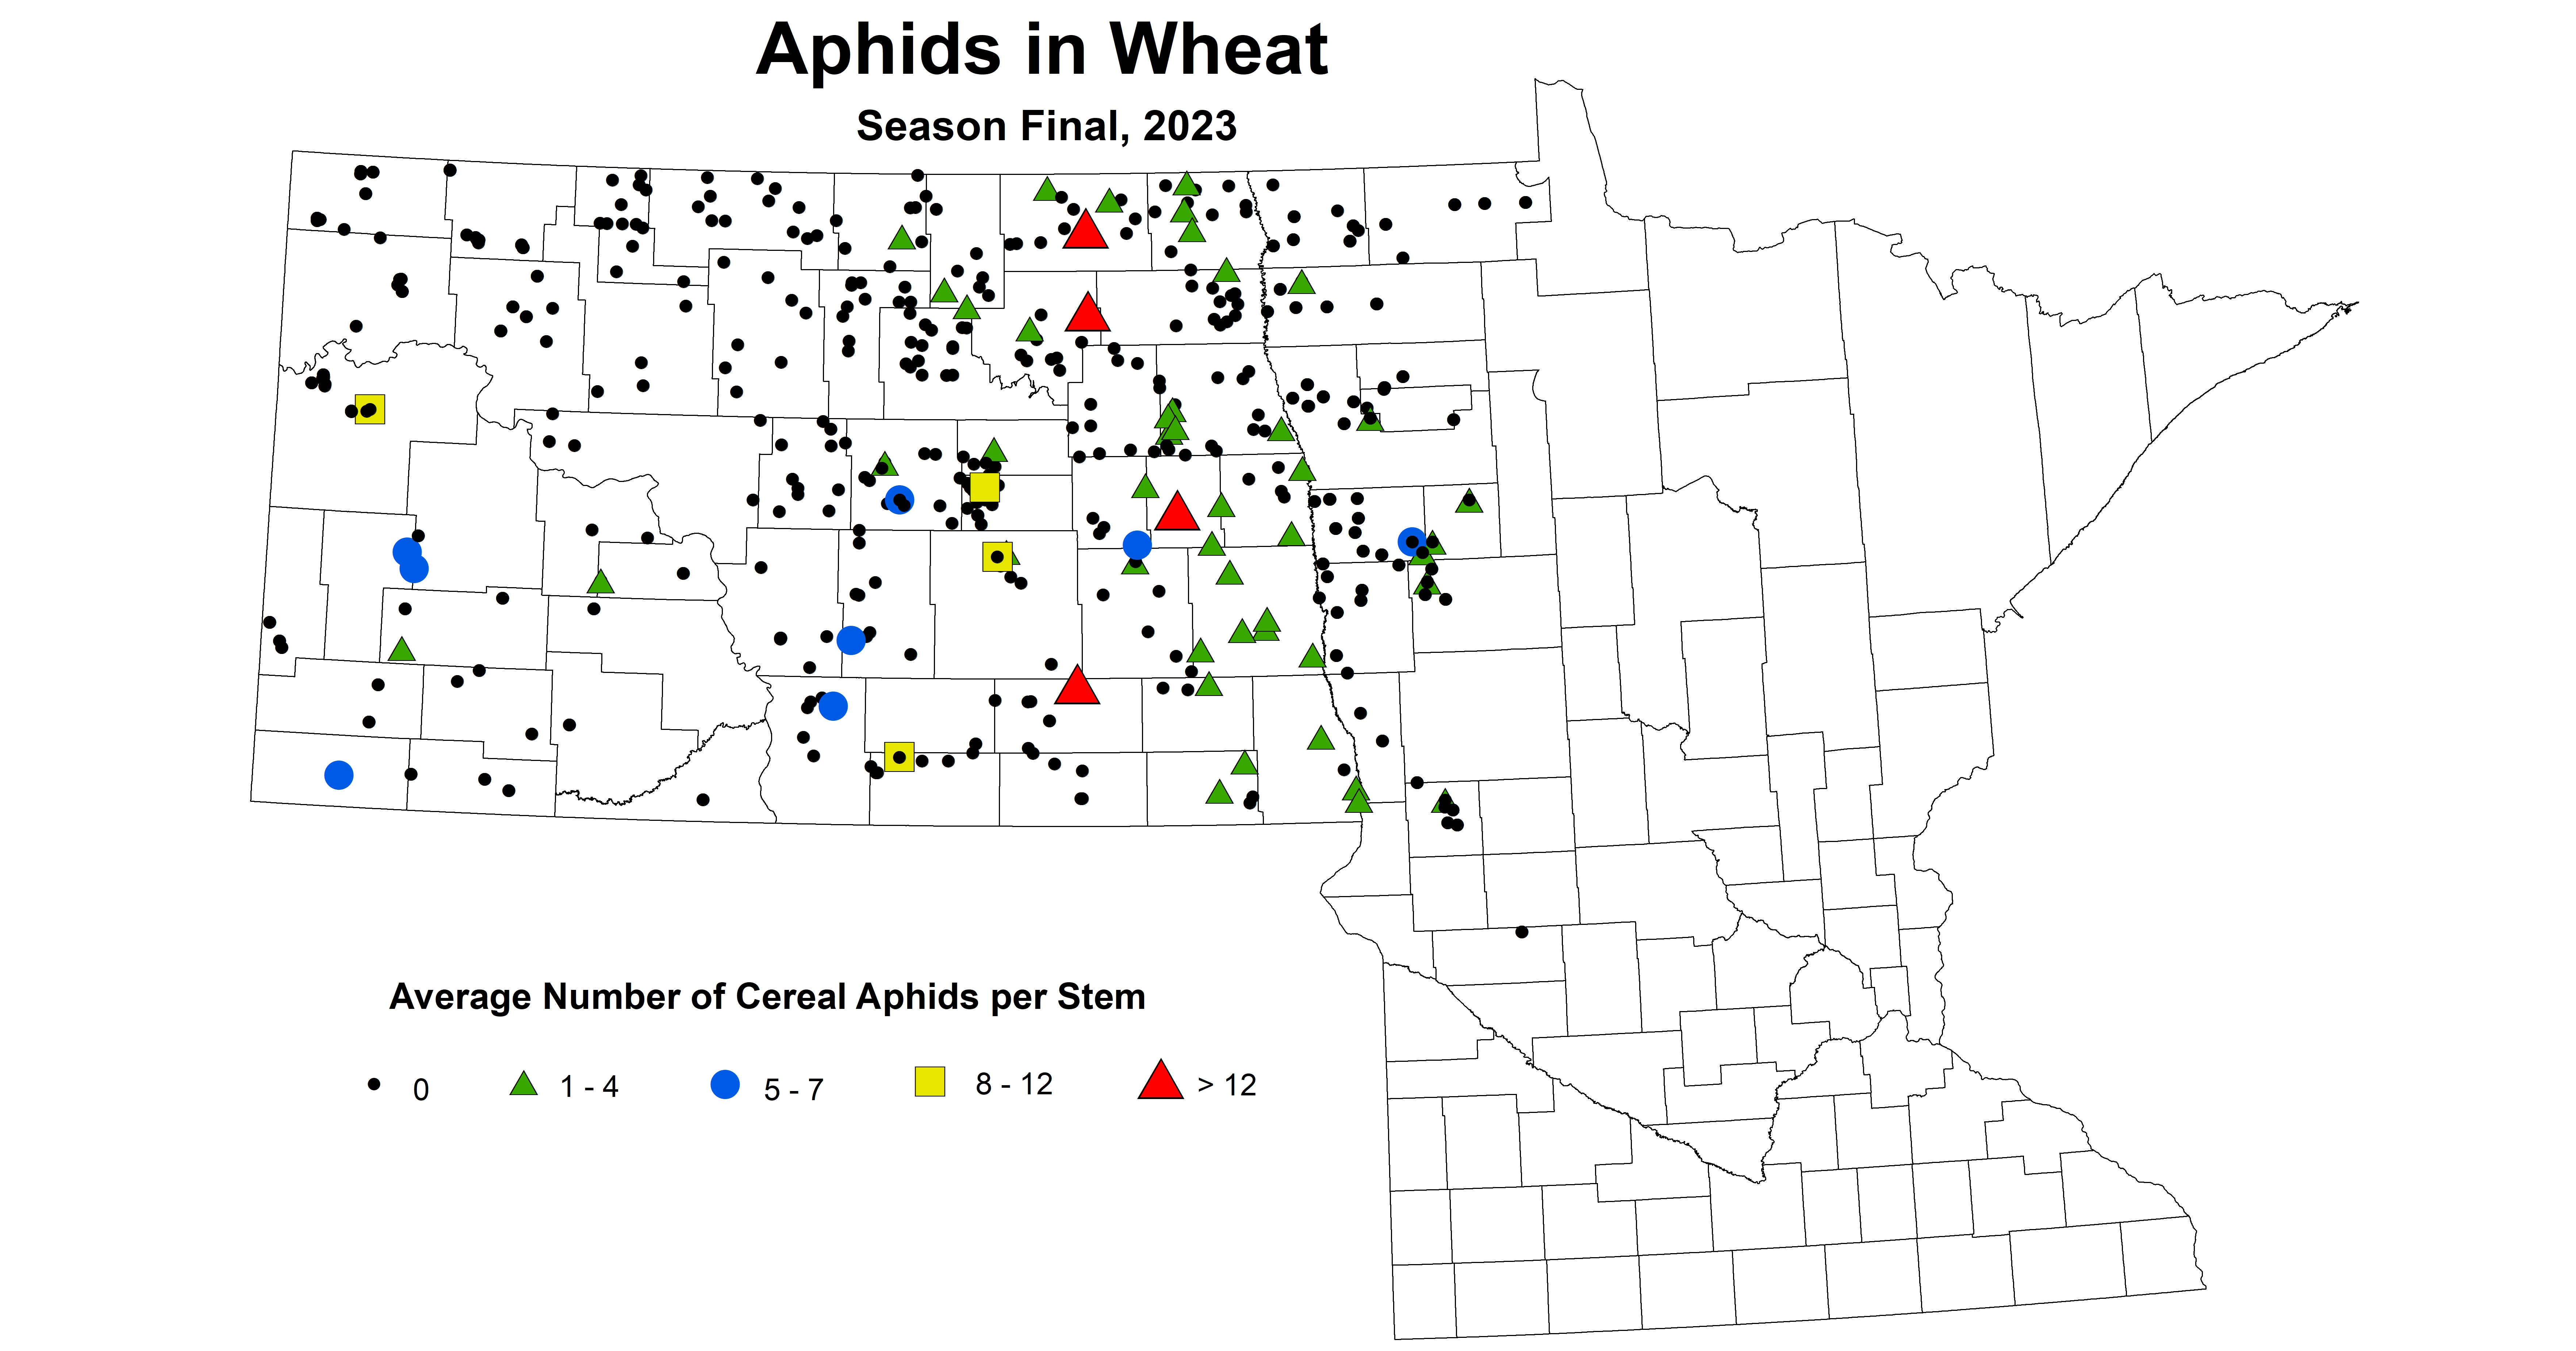 wheat aphids season final 2023